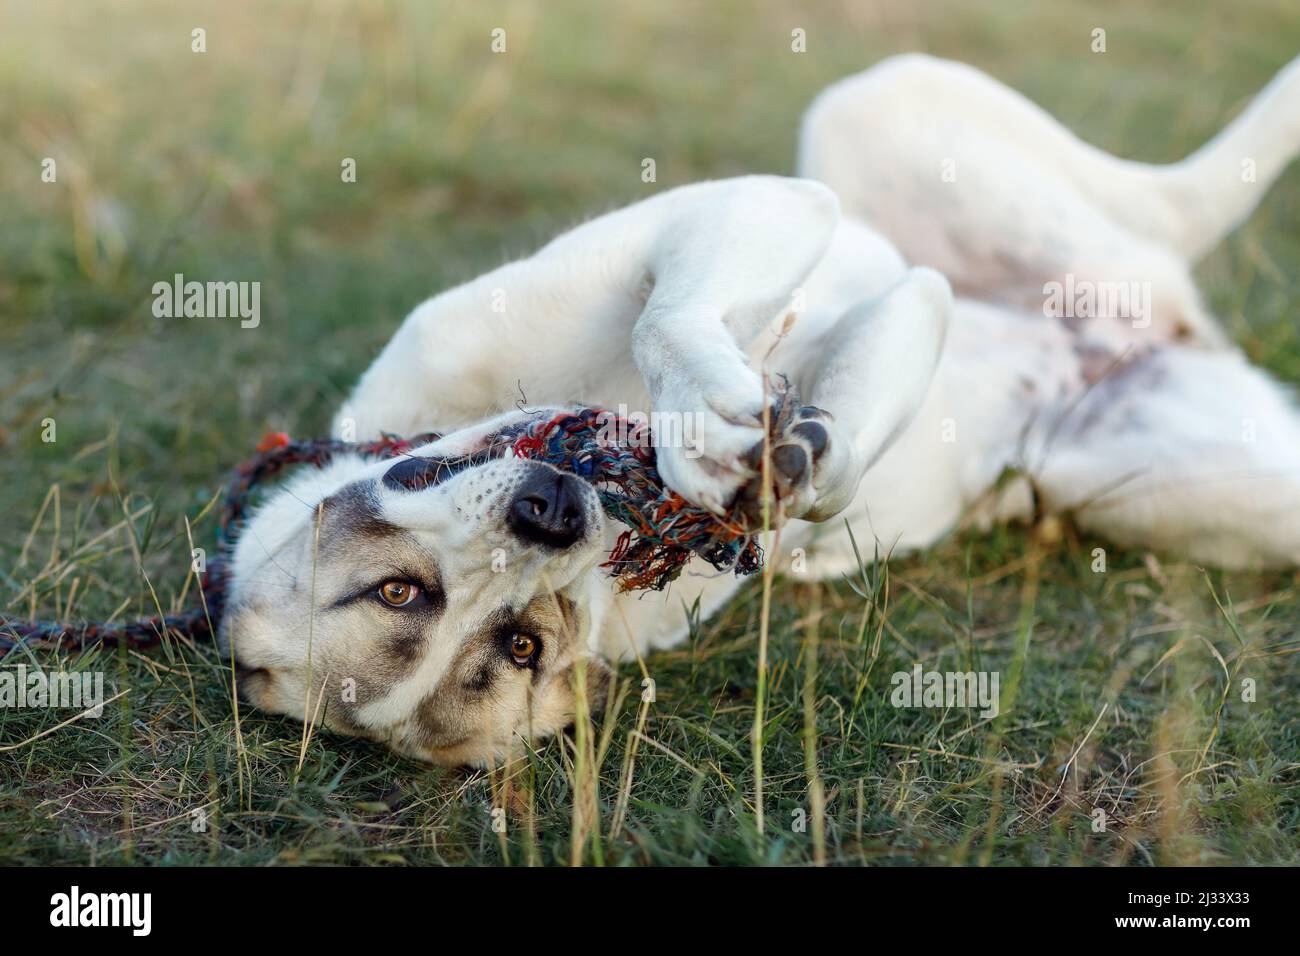 Le chien se trouve dans la prairie sur son dos, tient une corde dans ses pattes et joue avec elle. Banque D'Images